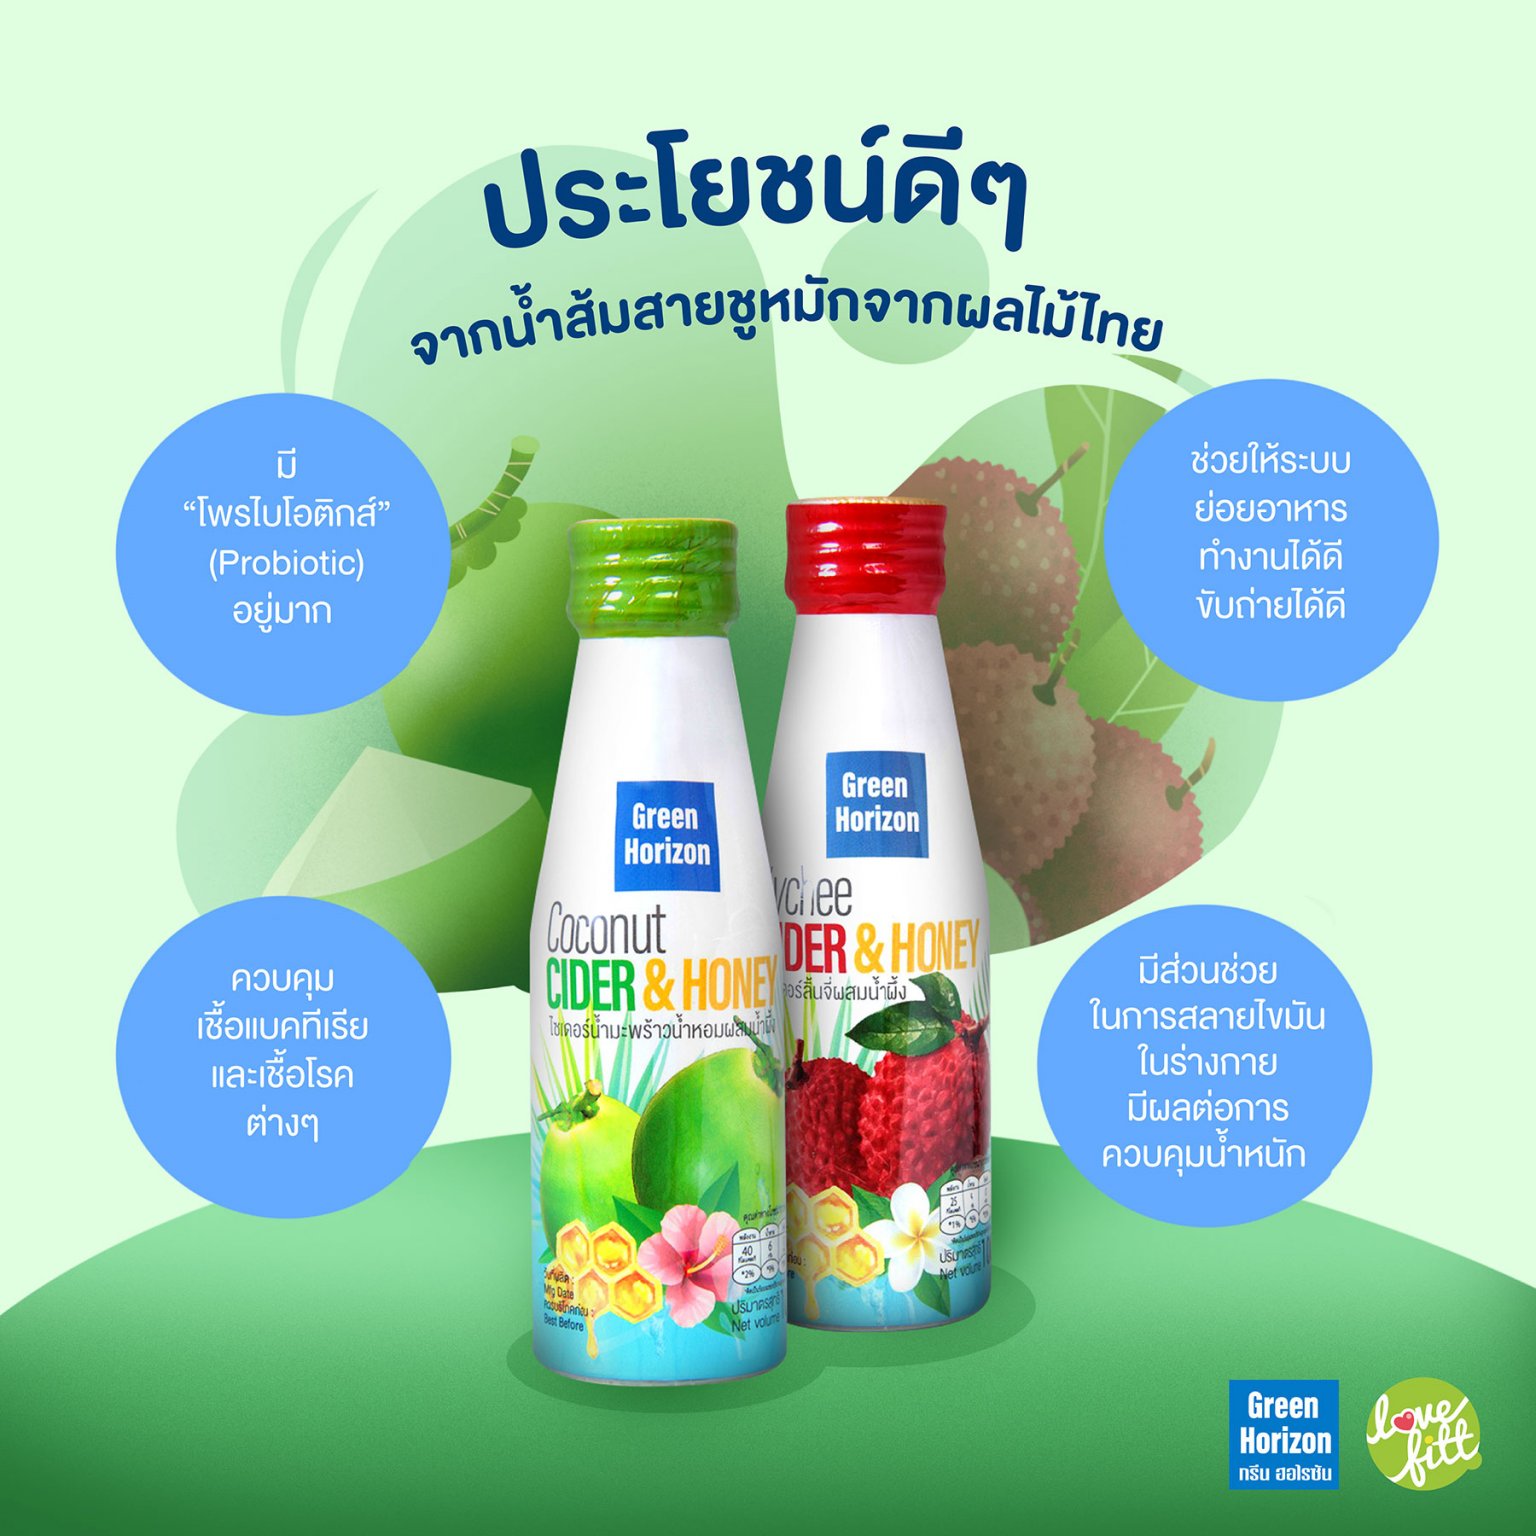 น้ำส้มสายชูหมักจากผลไม้ไทย โพรไบโอติกส์ไซเดอร์ ดื่มดีได้ประโยชน์จากธรรมชาติ 8775